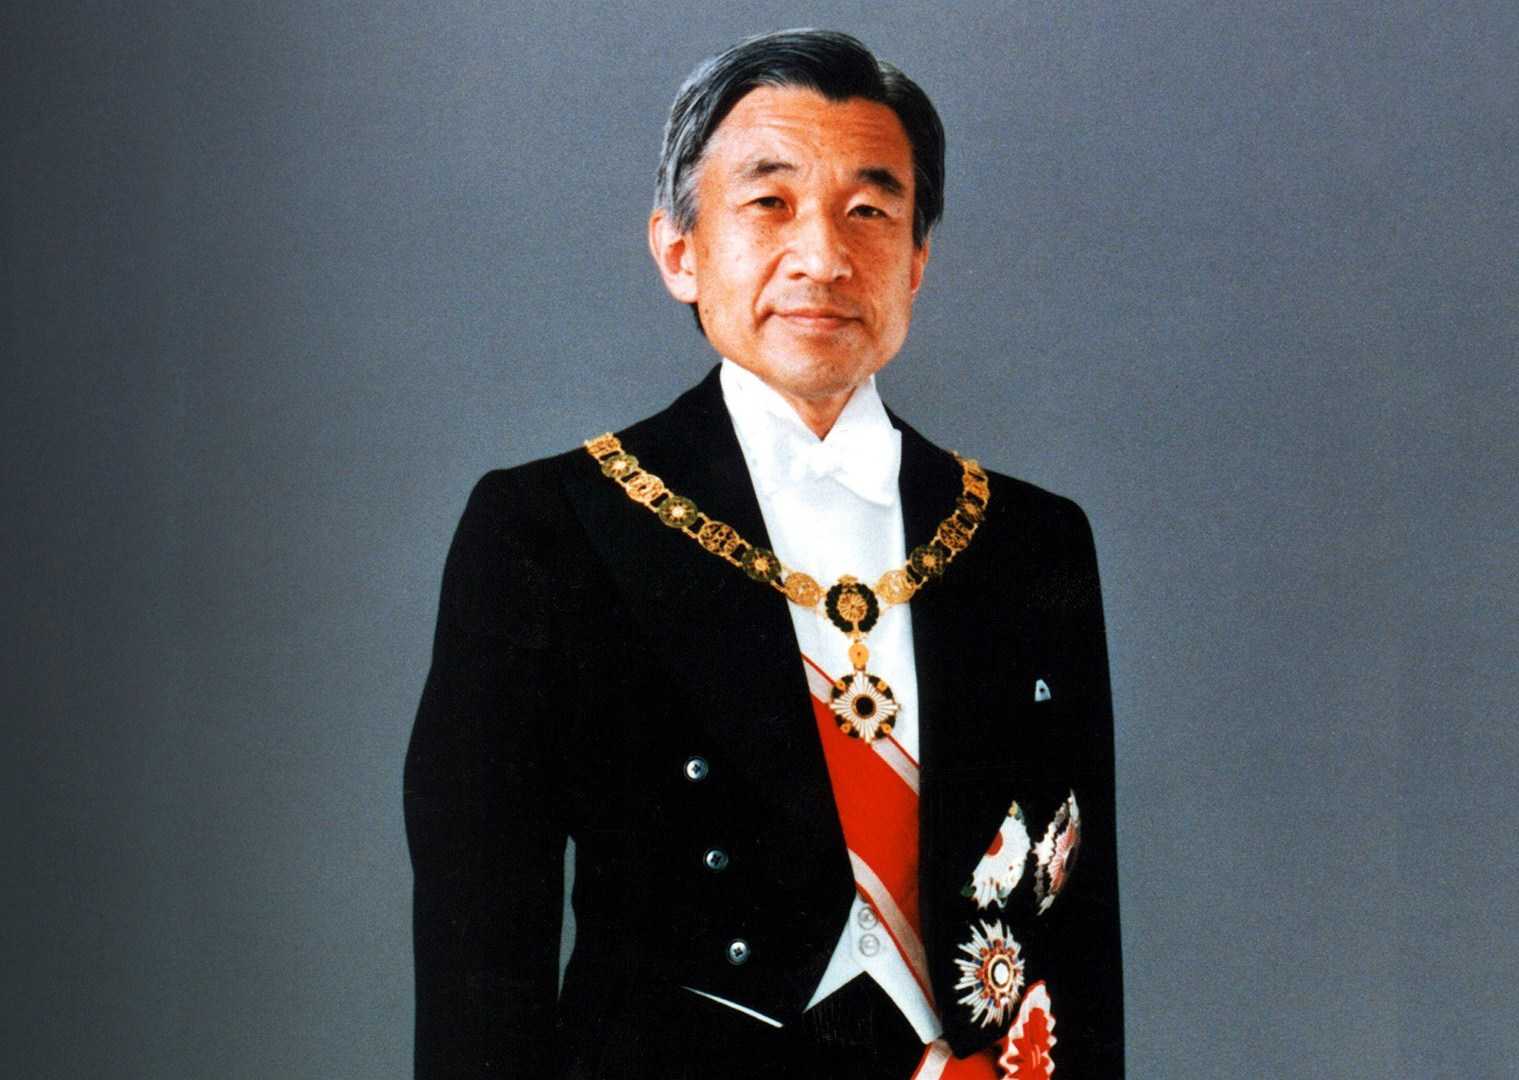 Японский император впервые за 200 лет добровольно отрекся от престола. почему? кто теперь займет трон?